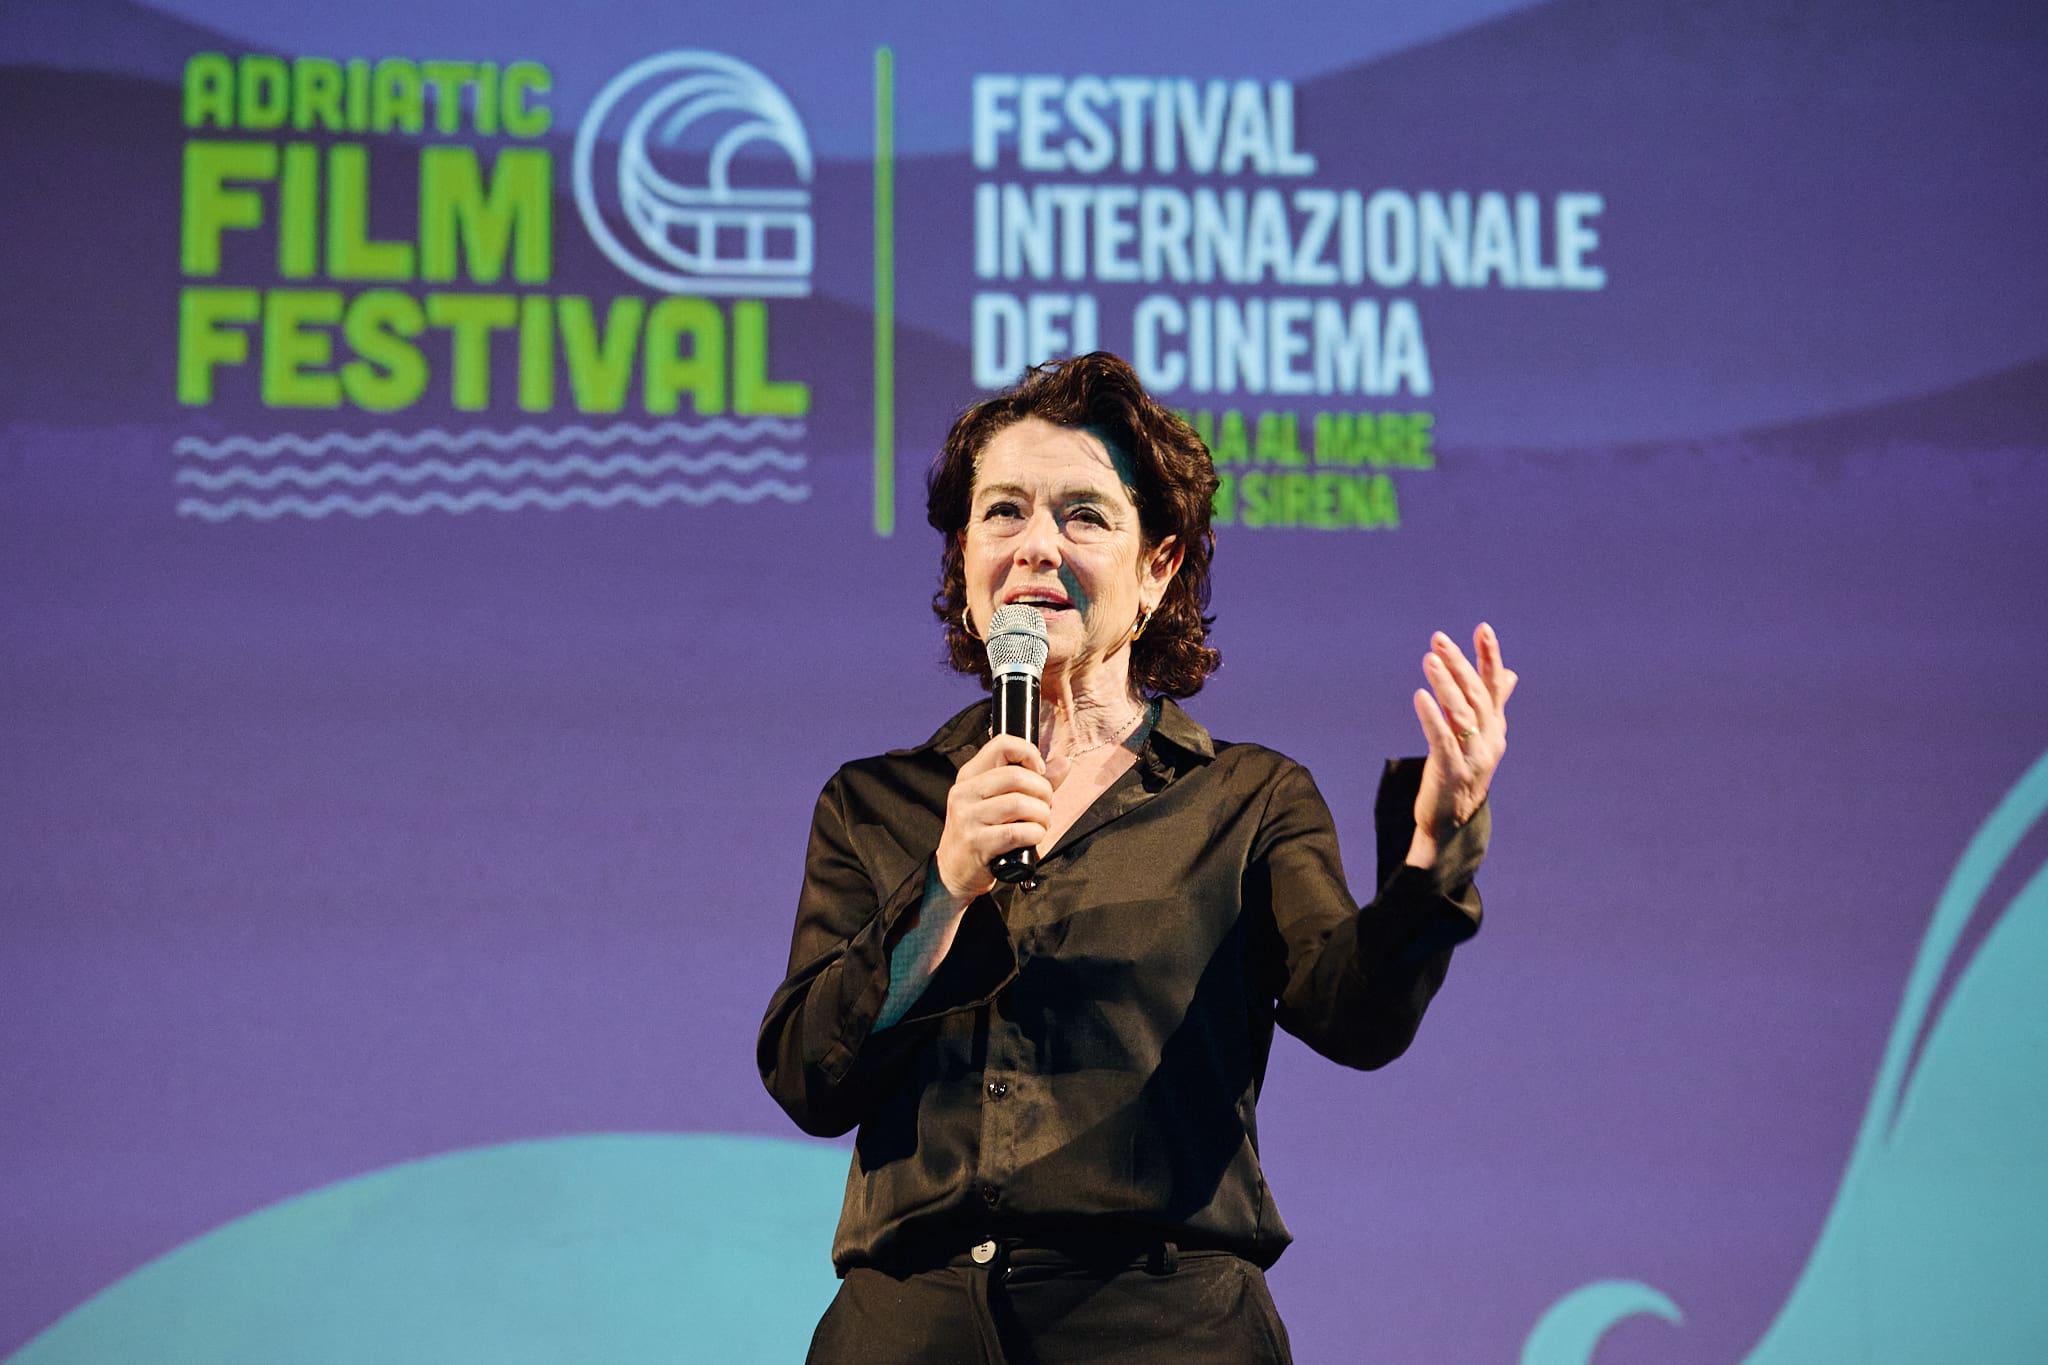 Adriatic Film Festival